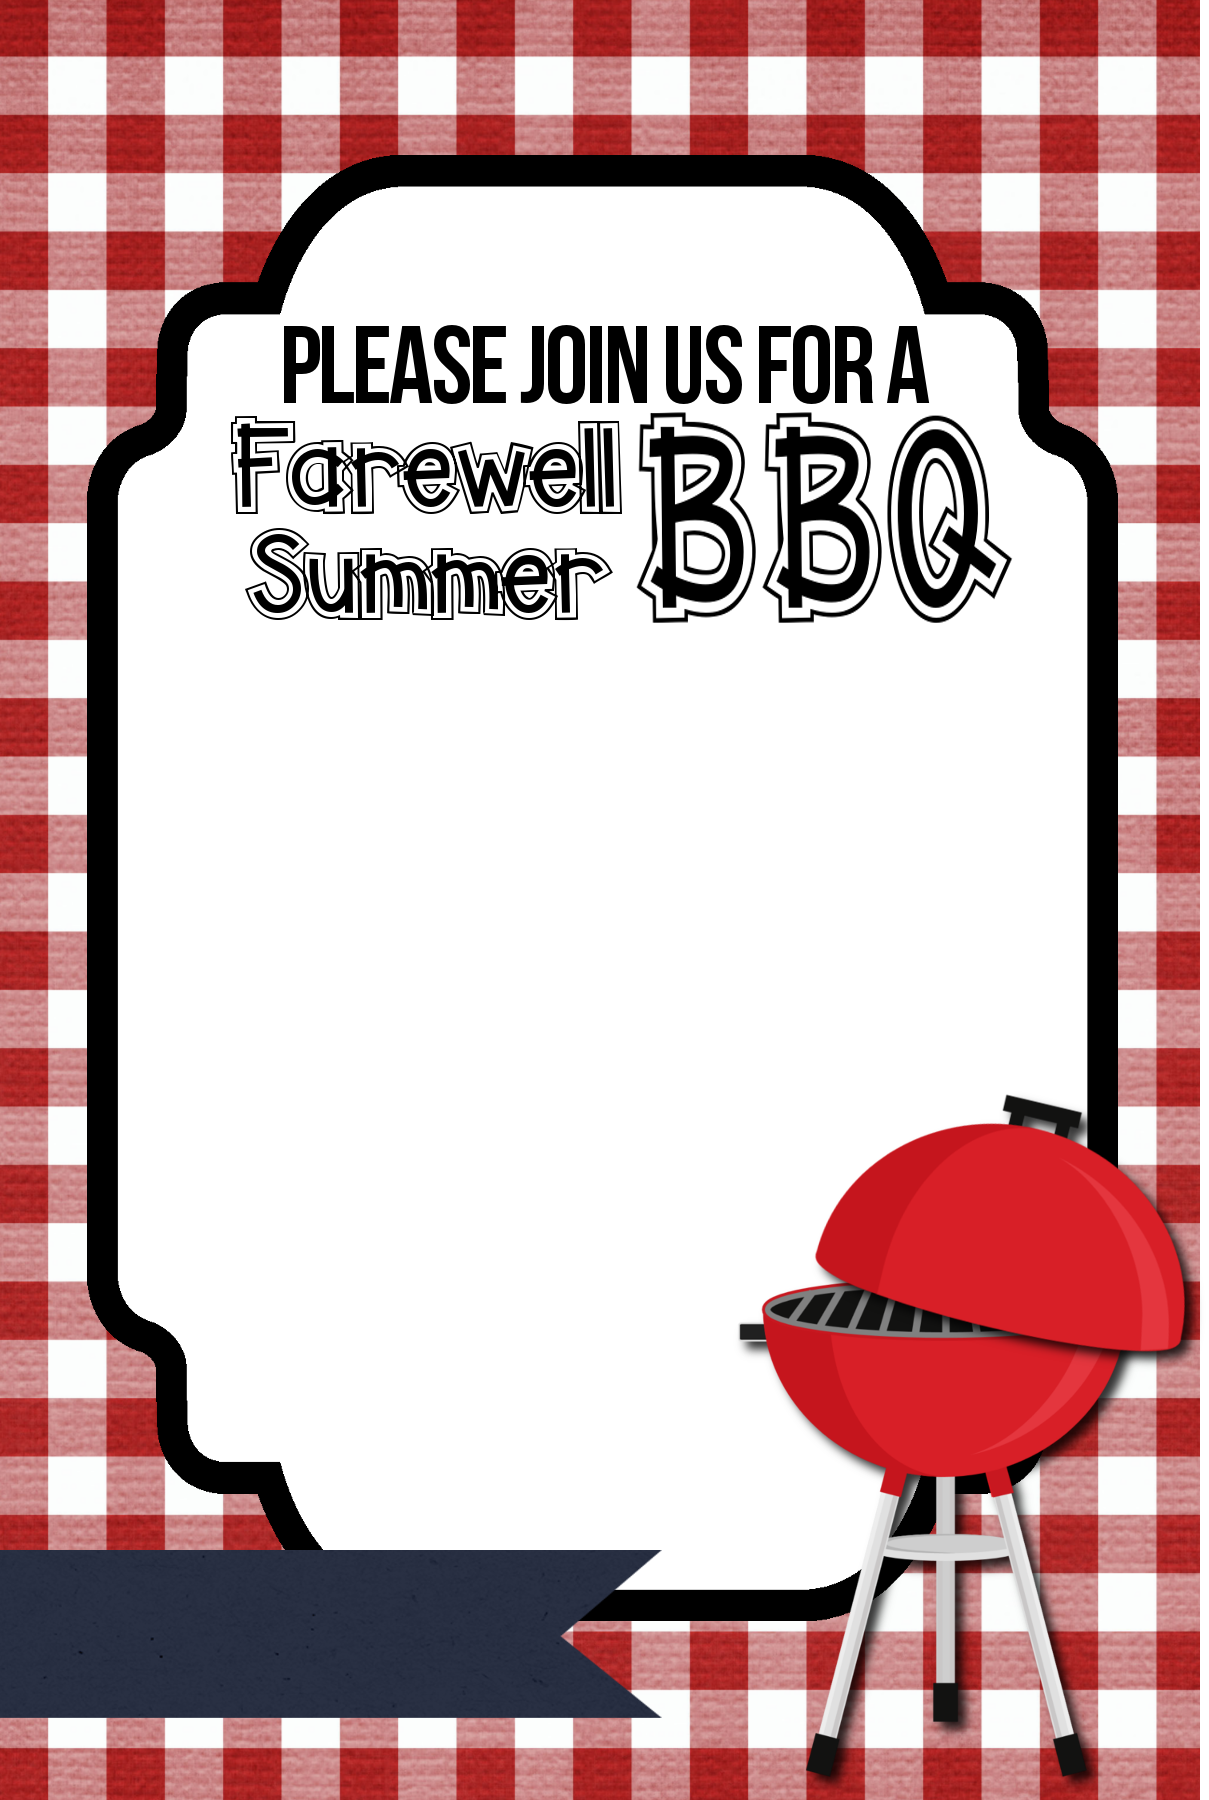 17 Barbecue Invitation Templates Free Download Images Summer BBQ Invitation Templates Free